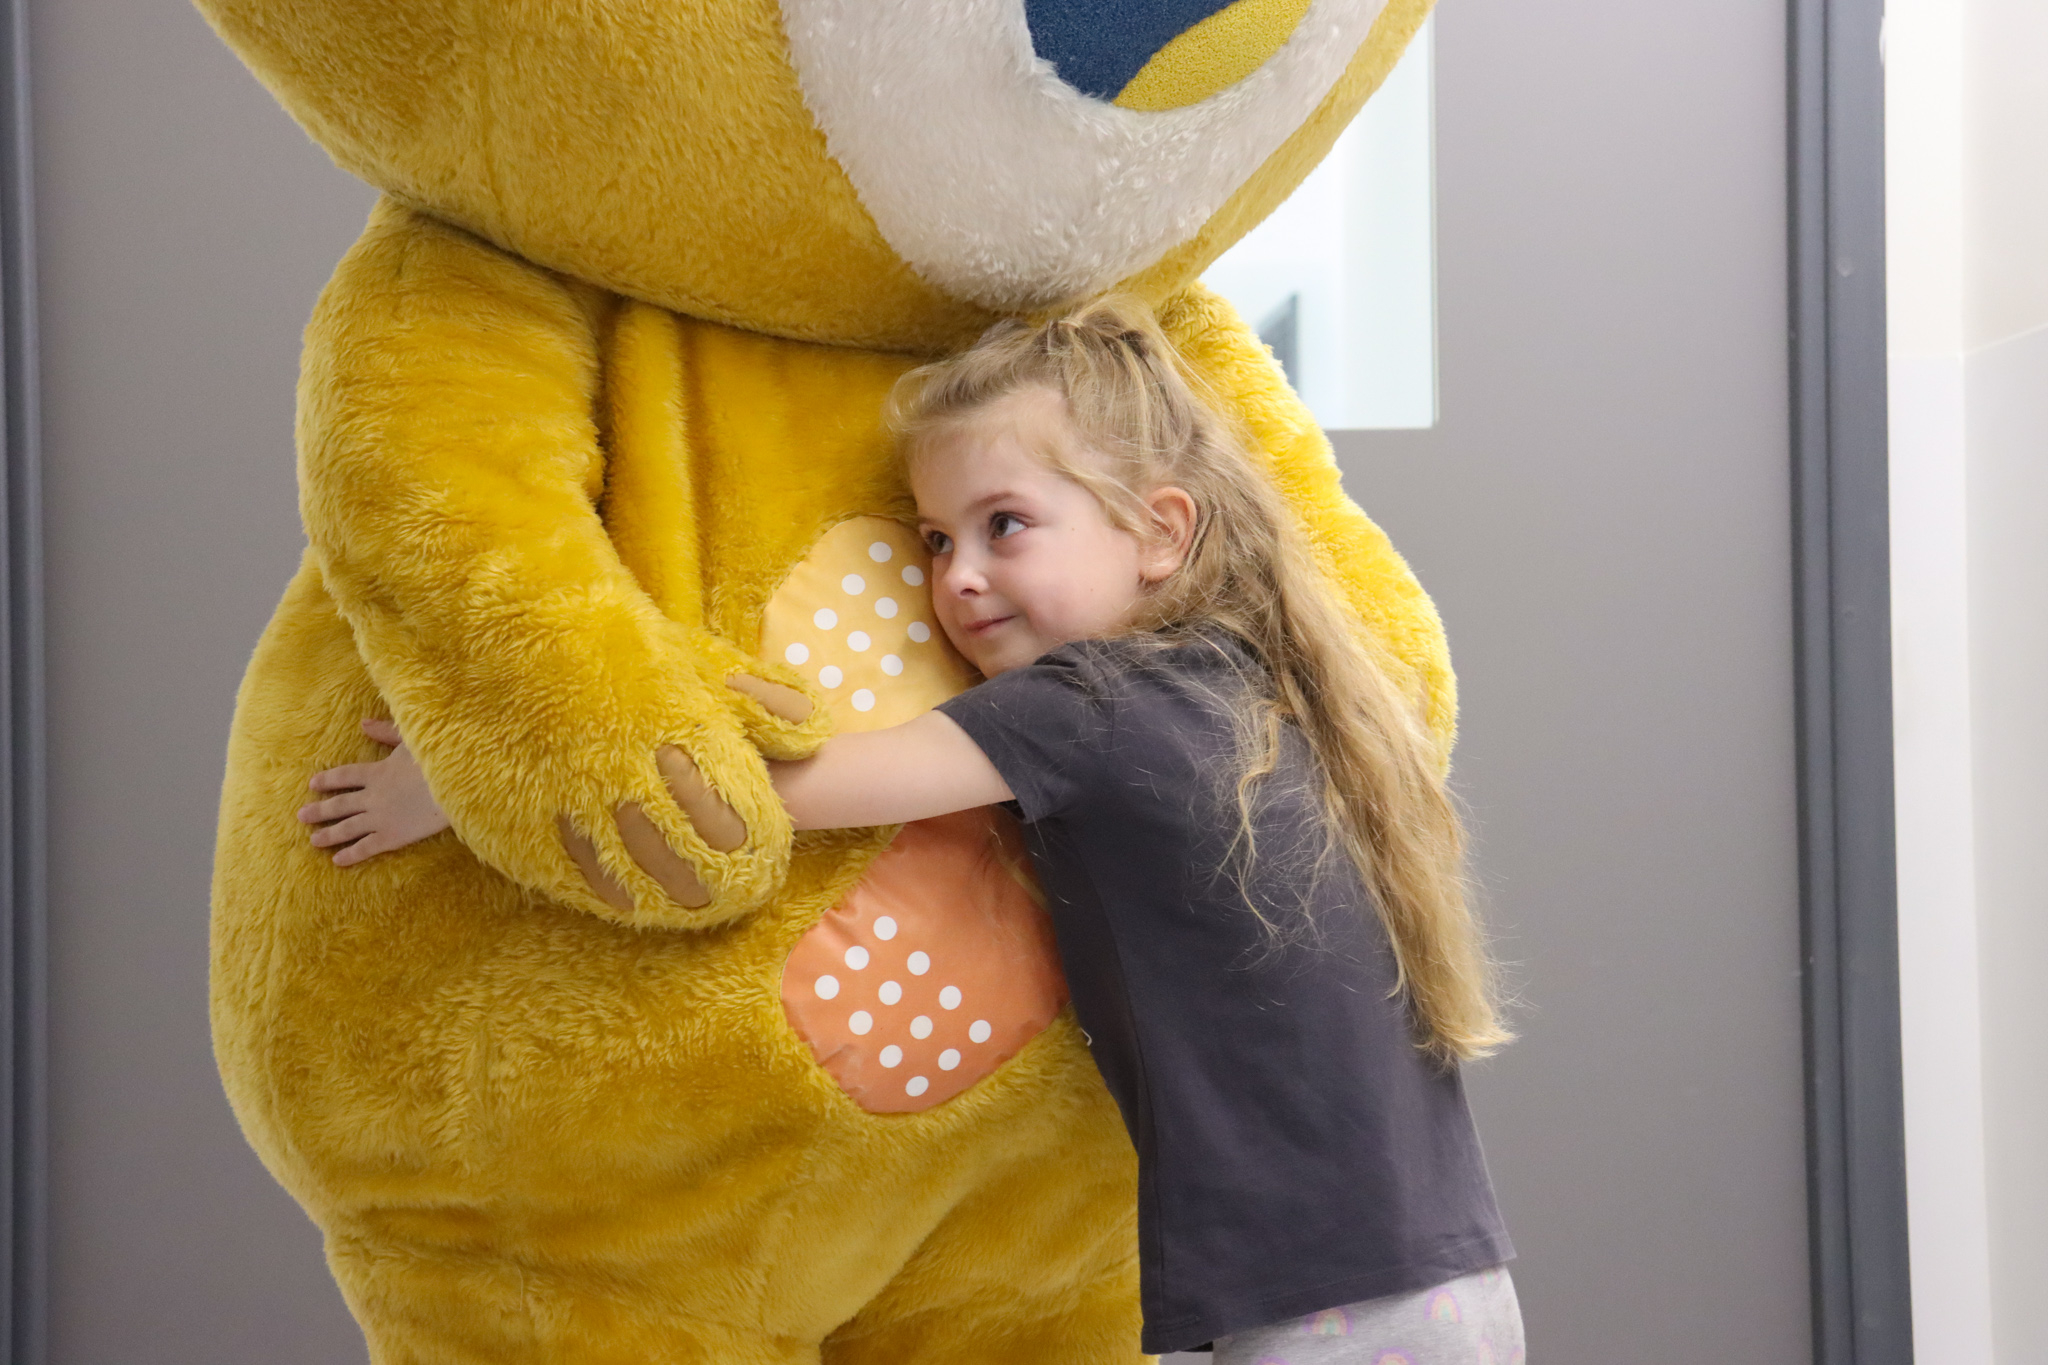 JFP Childrens Hospital - little girl hugging charity mascot.jpg